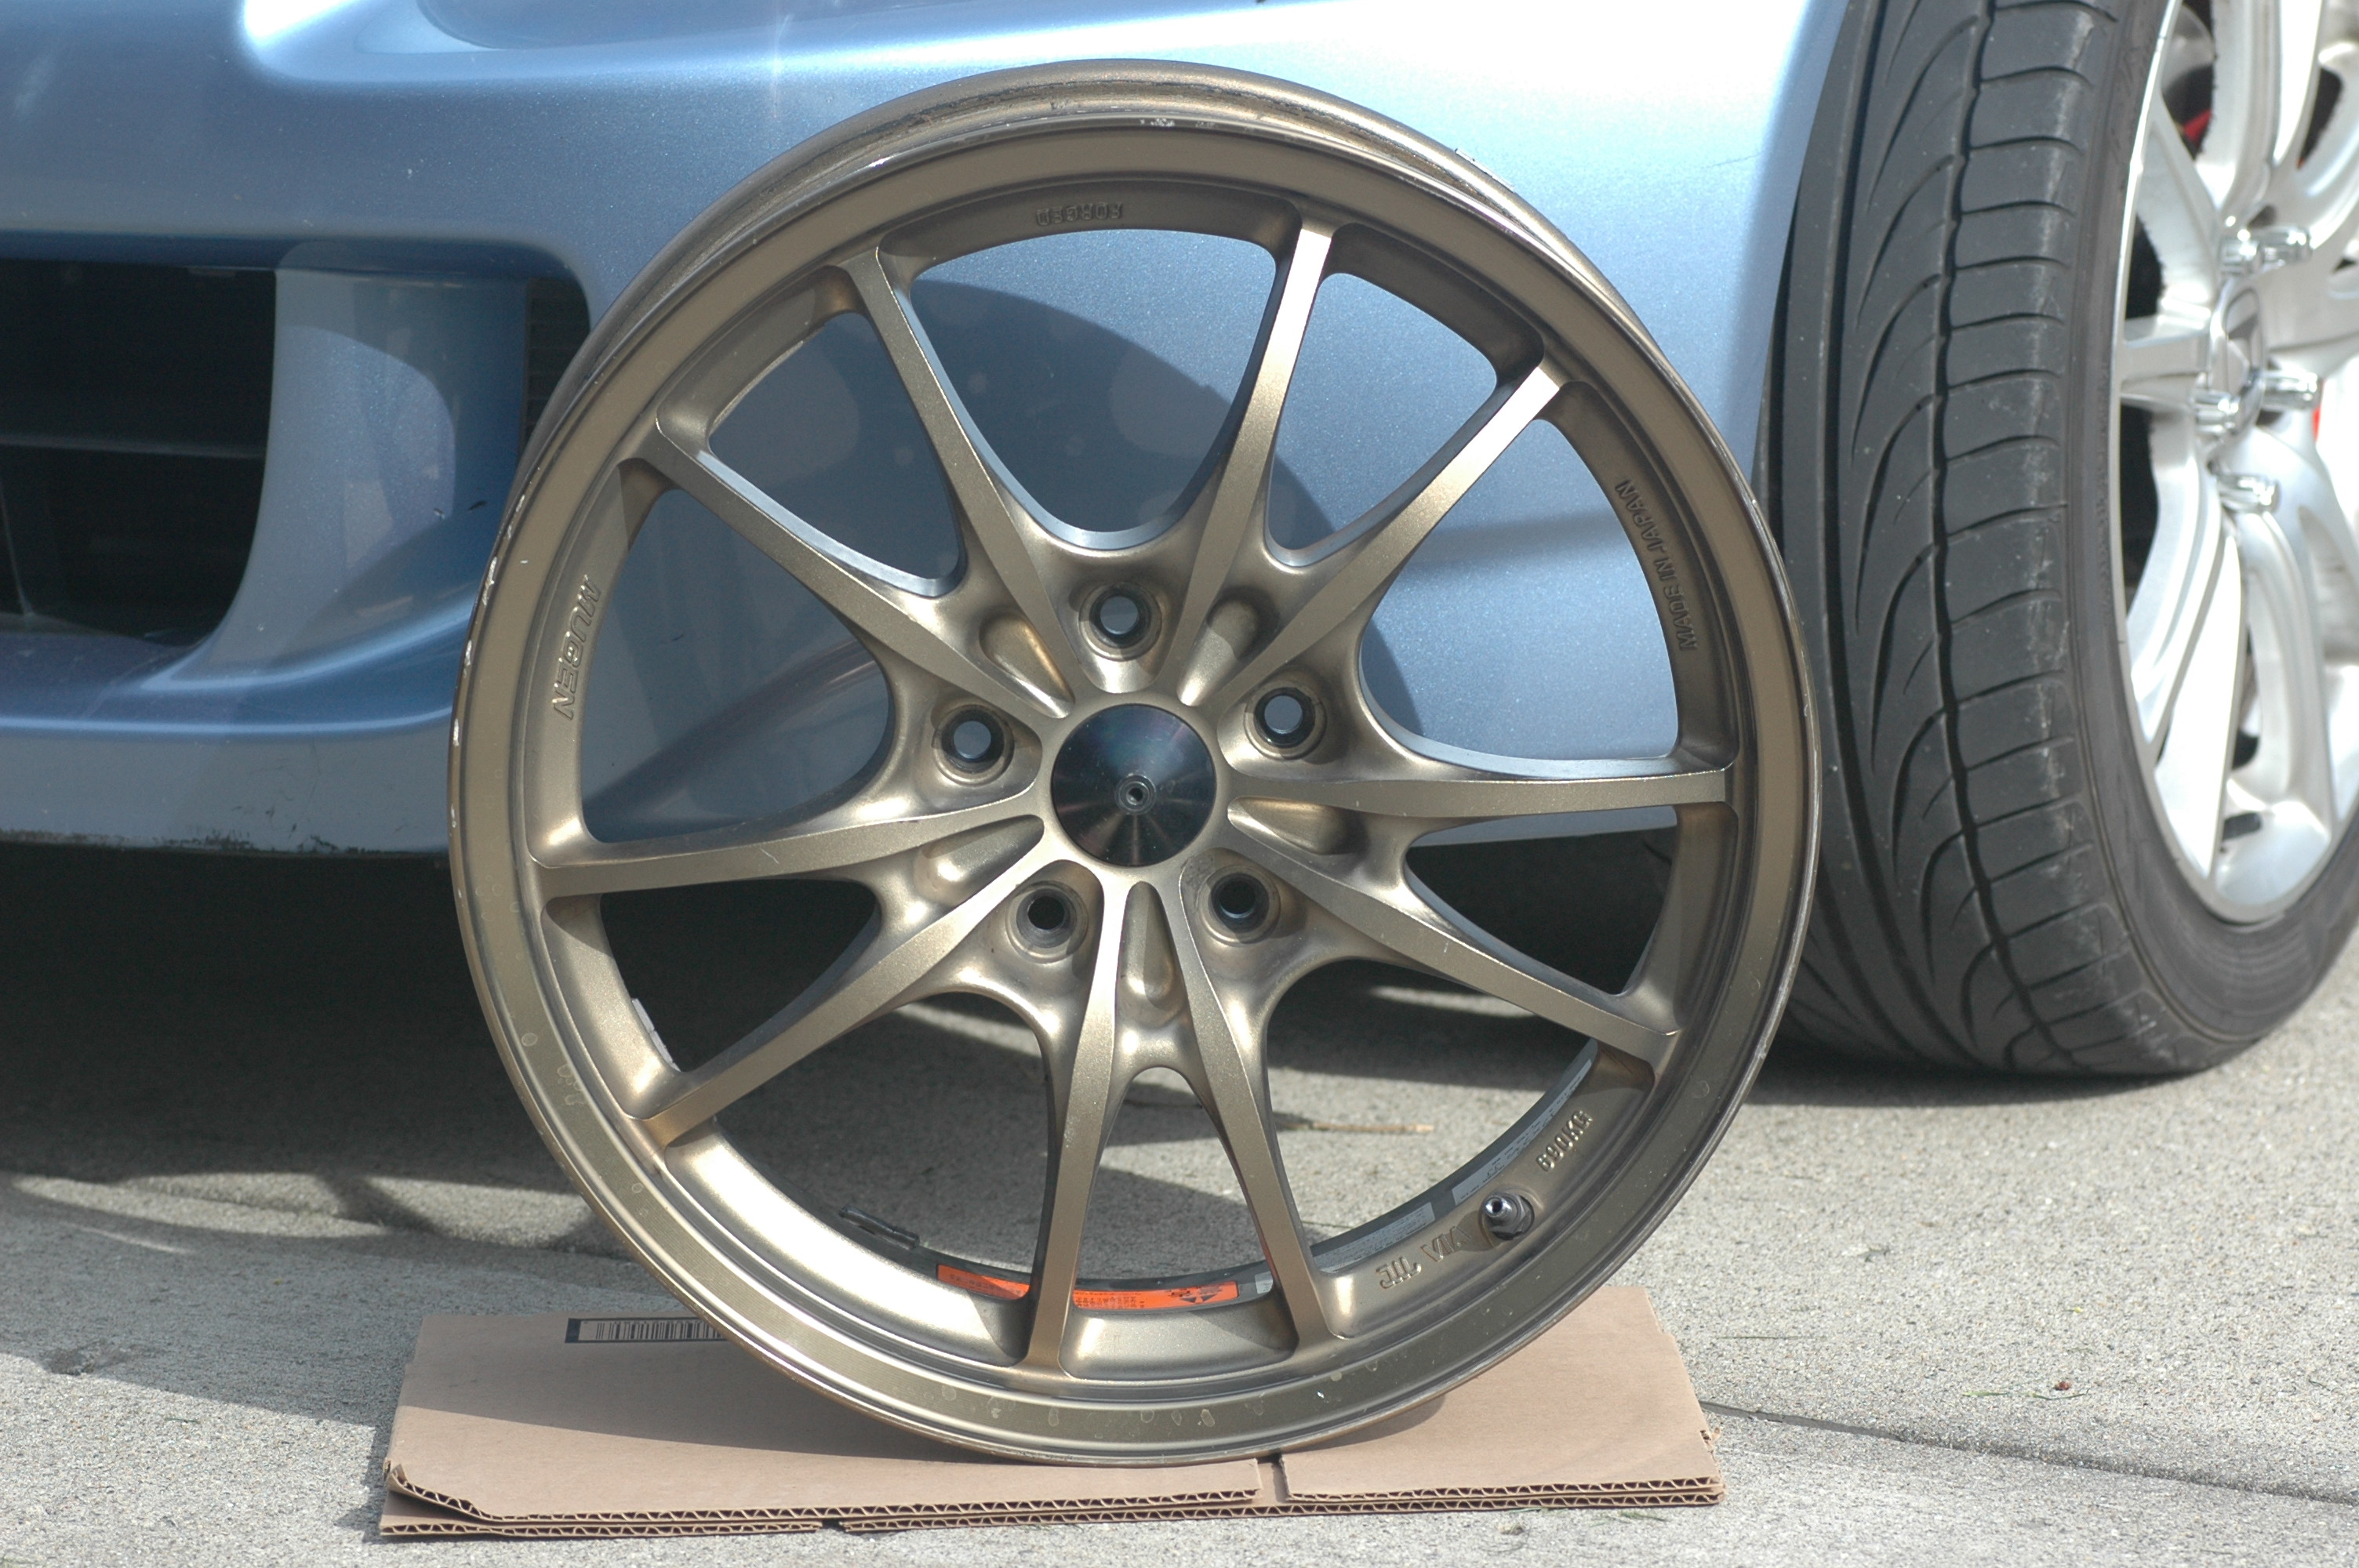 FS: Mugen MF10 wheels - full set in bronze - S2KI Honda S2000 Forums